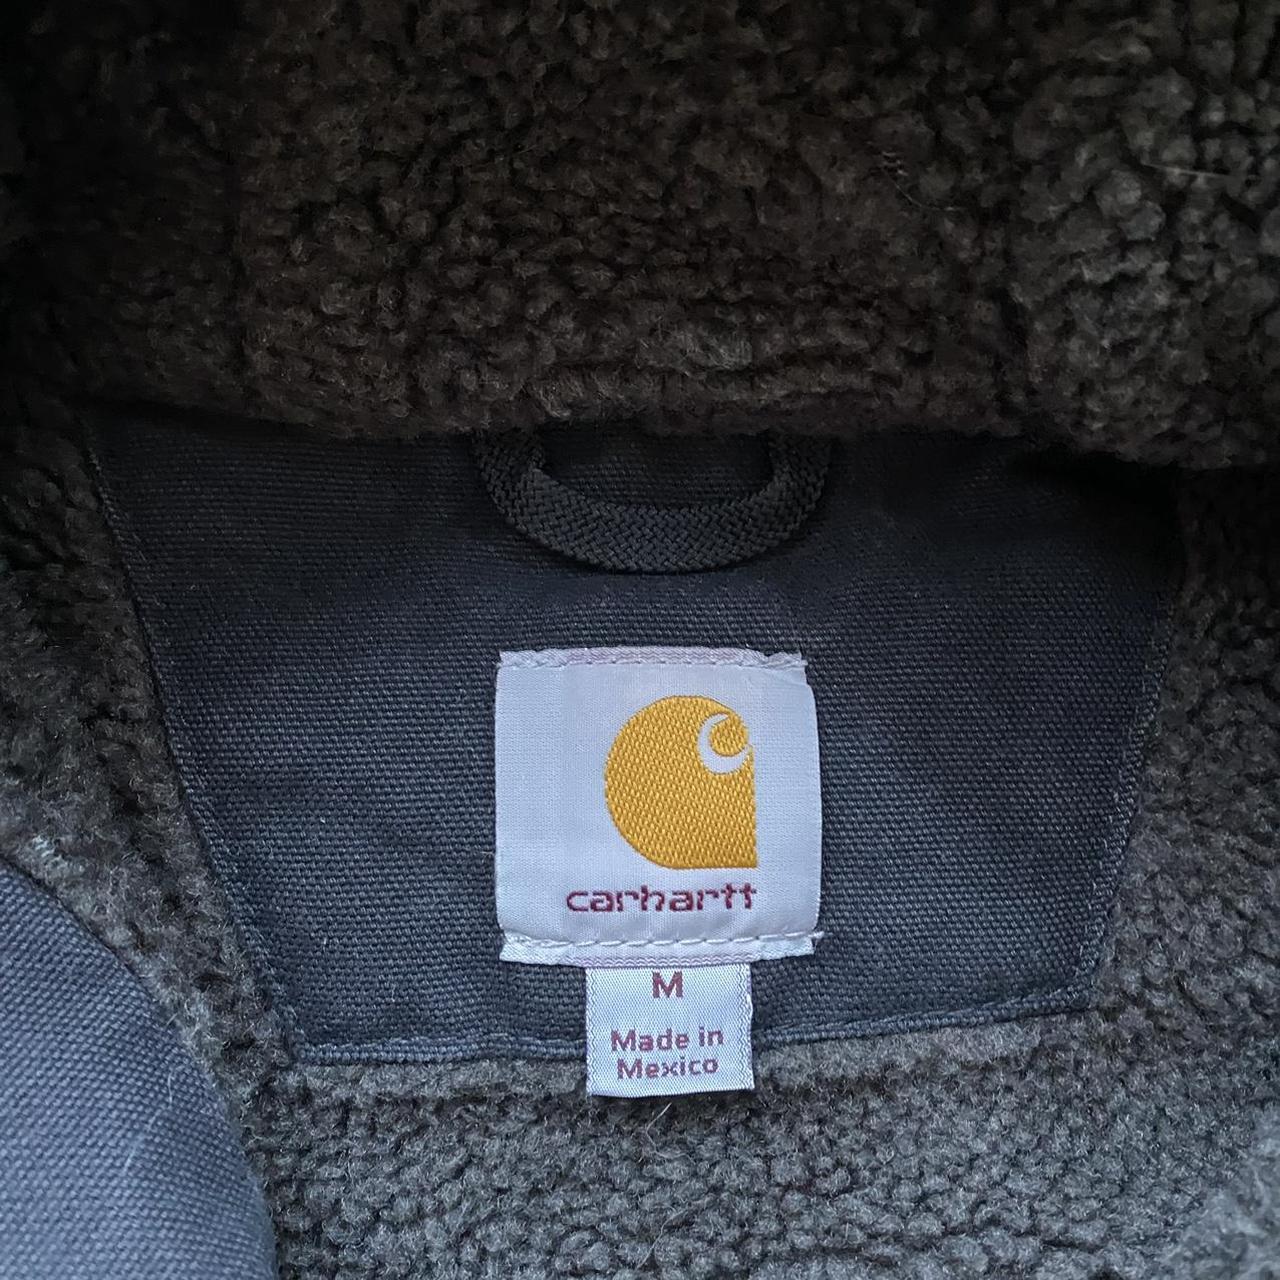 sherpa lined carhartt jacket men’s medium - Depop